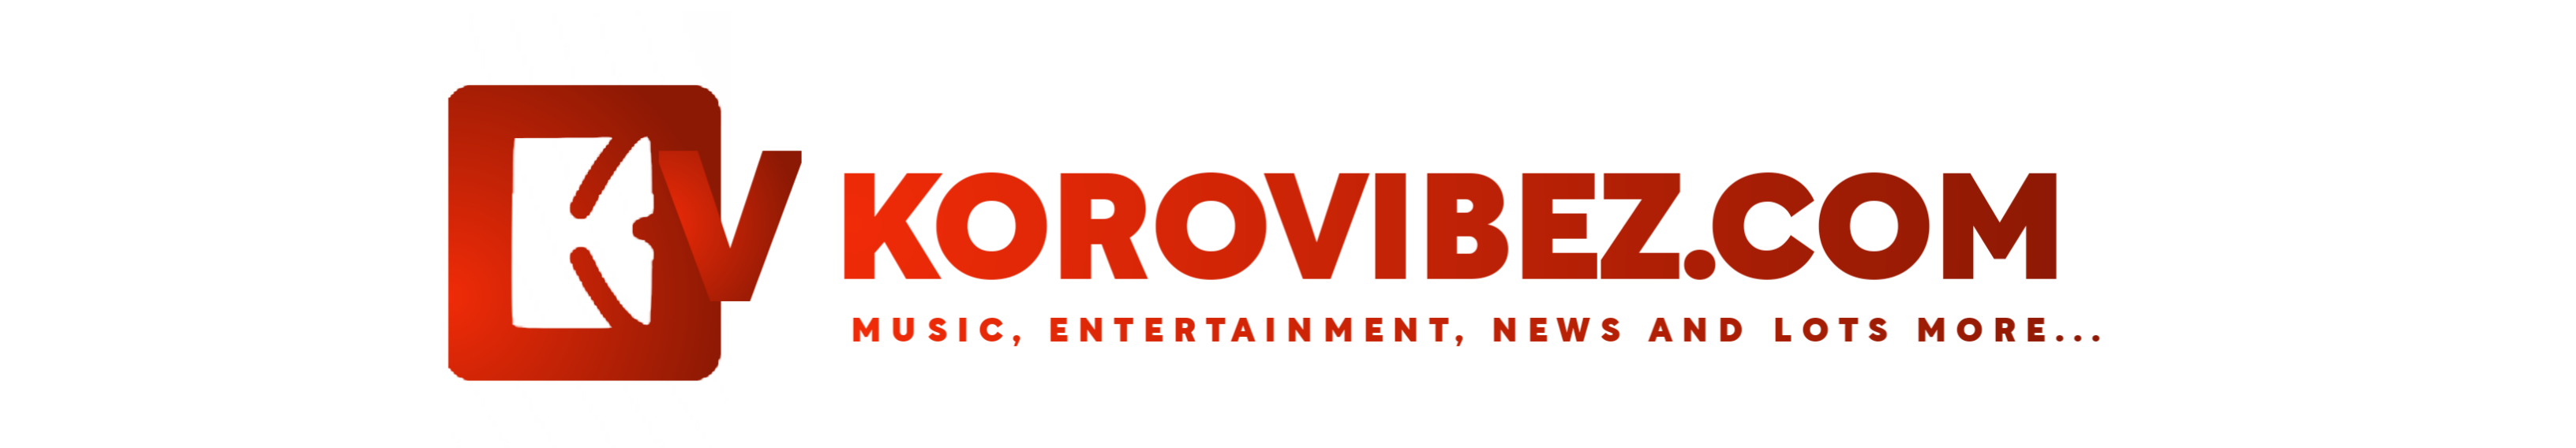 KoroVibez.com | Home Of Music, News & Entertainment Portal 